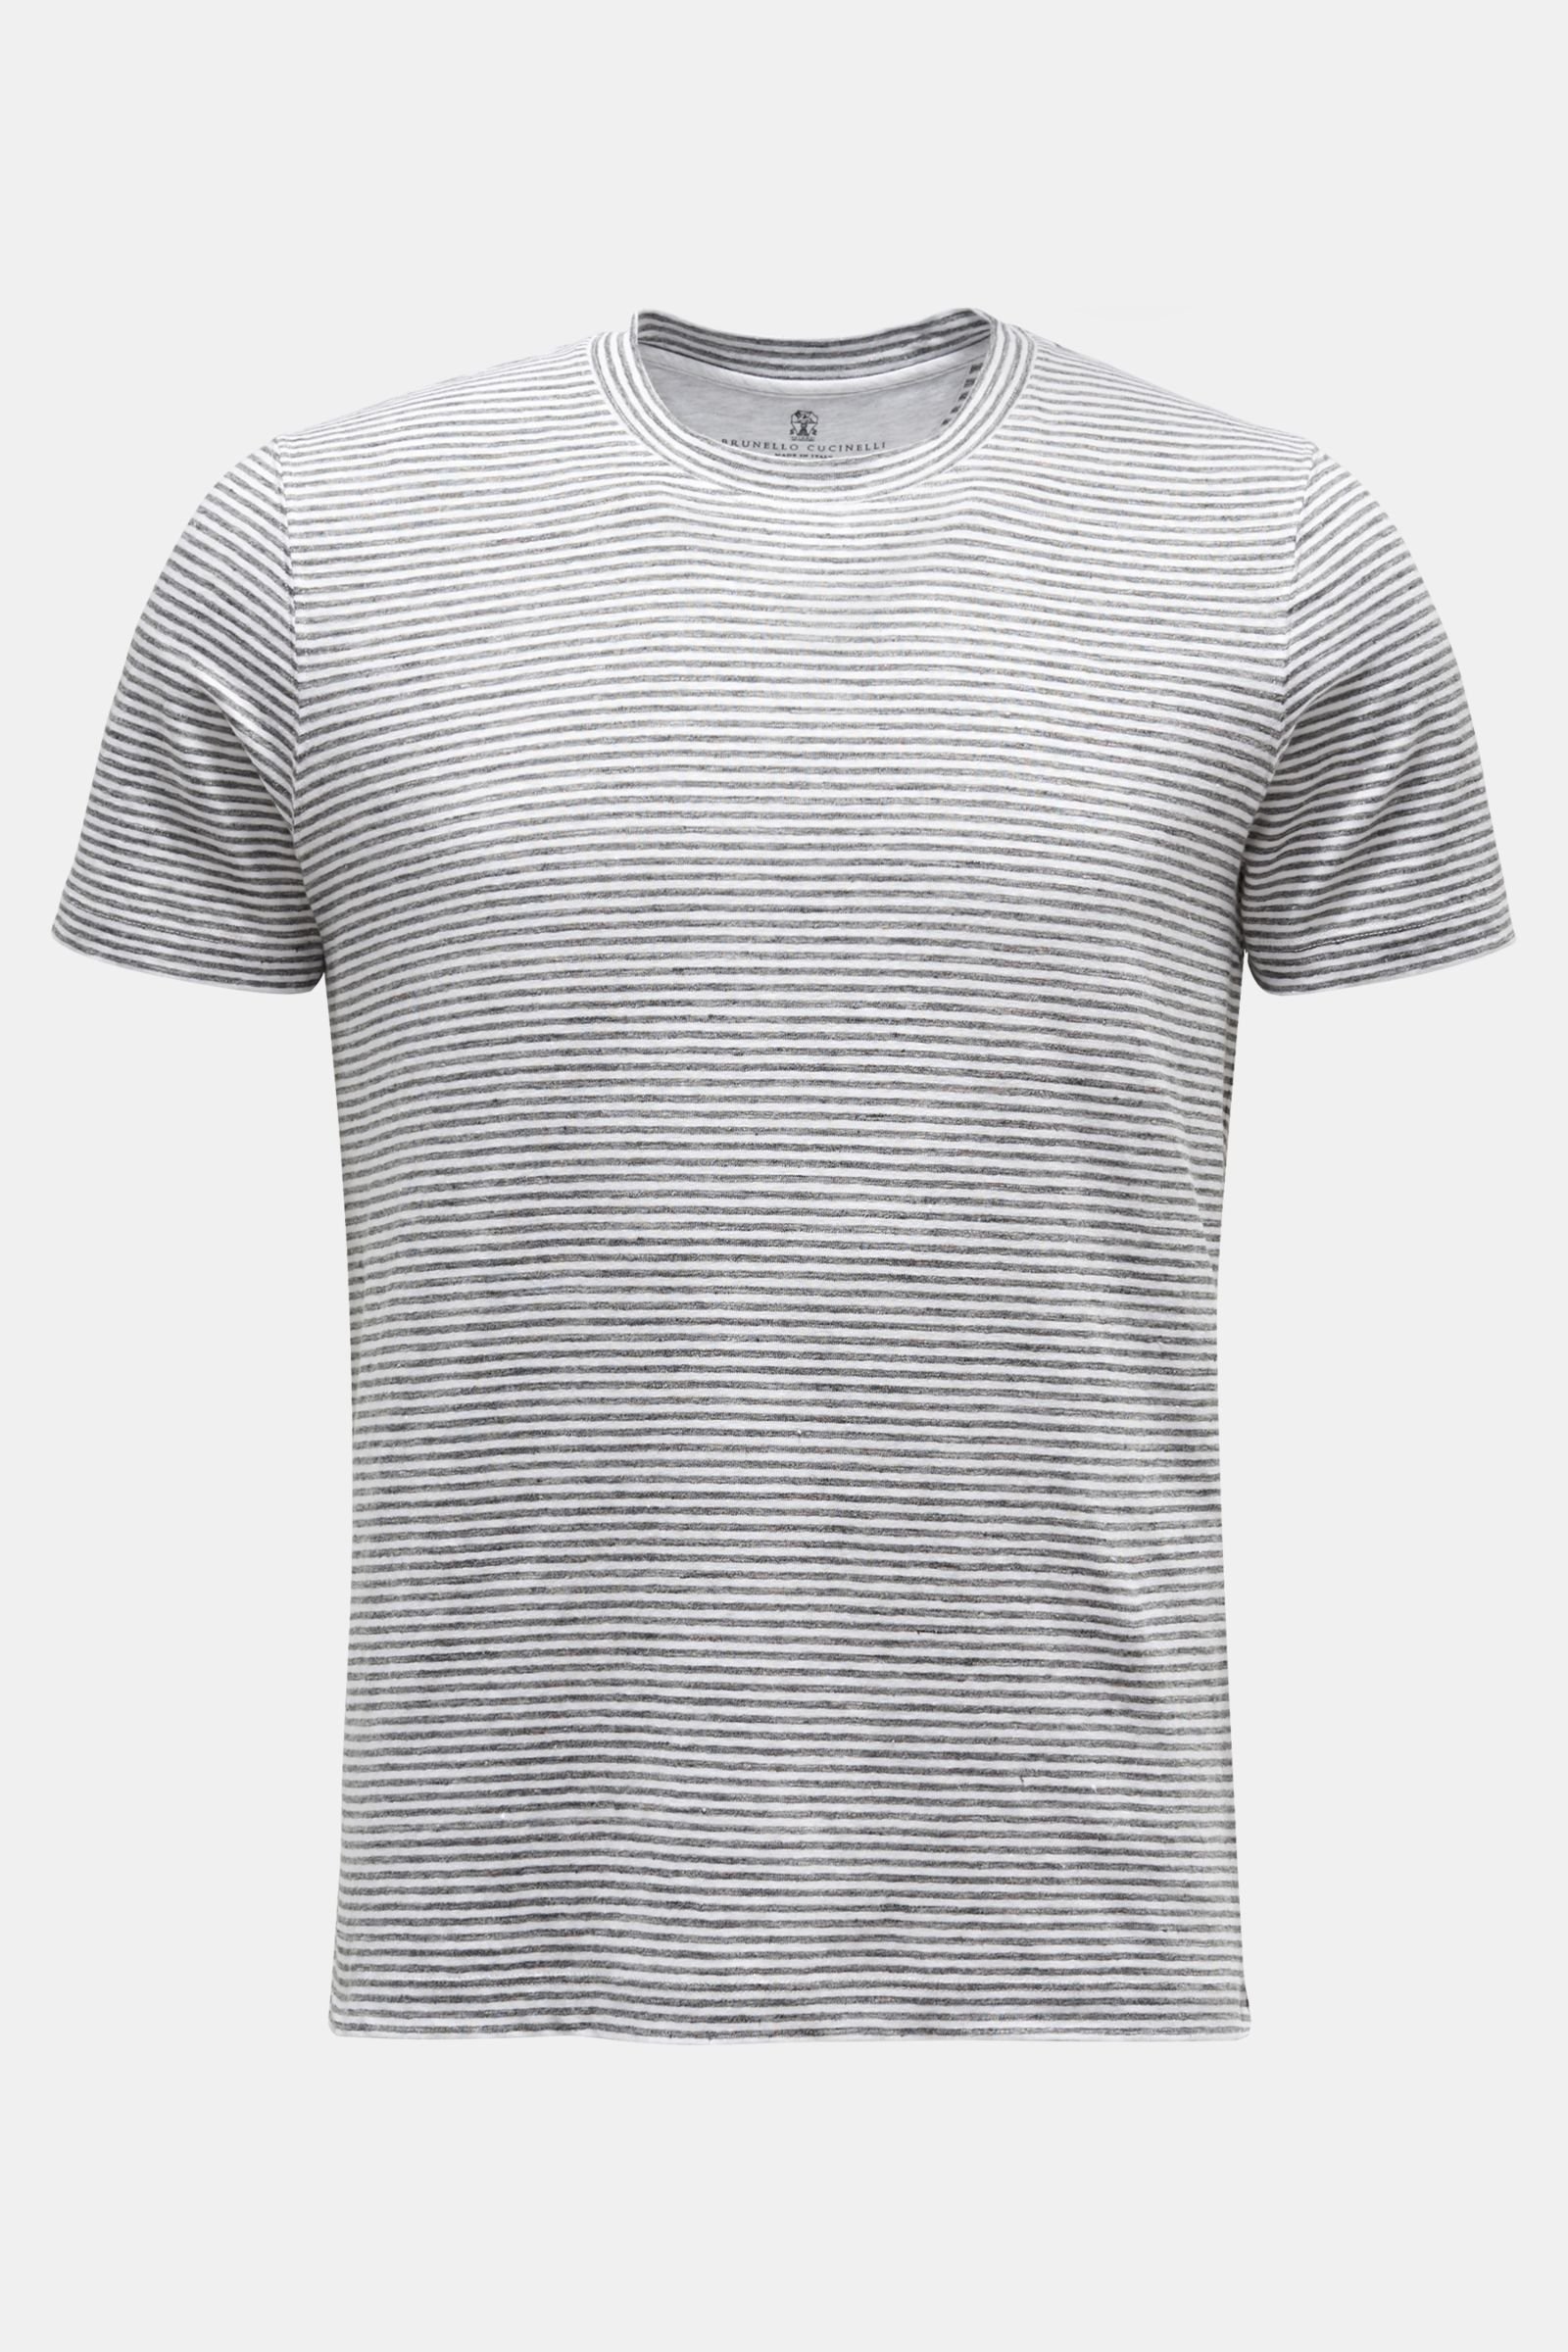 Linen crew neck T-shirt dark grey/white striped